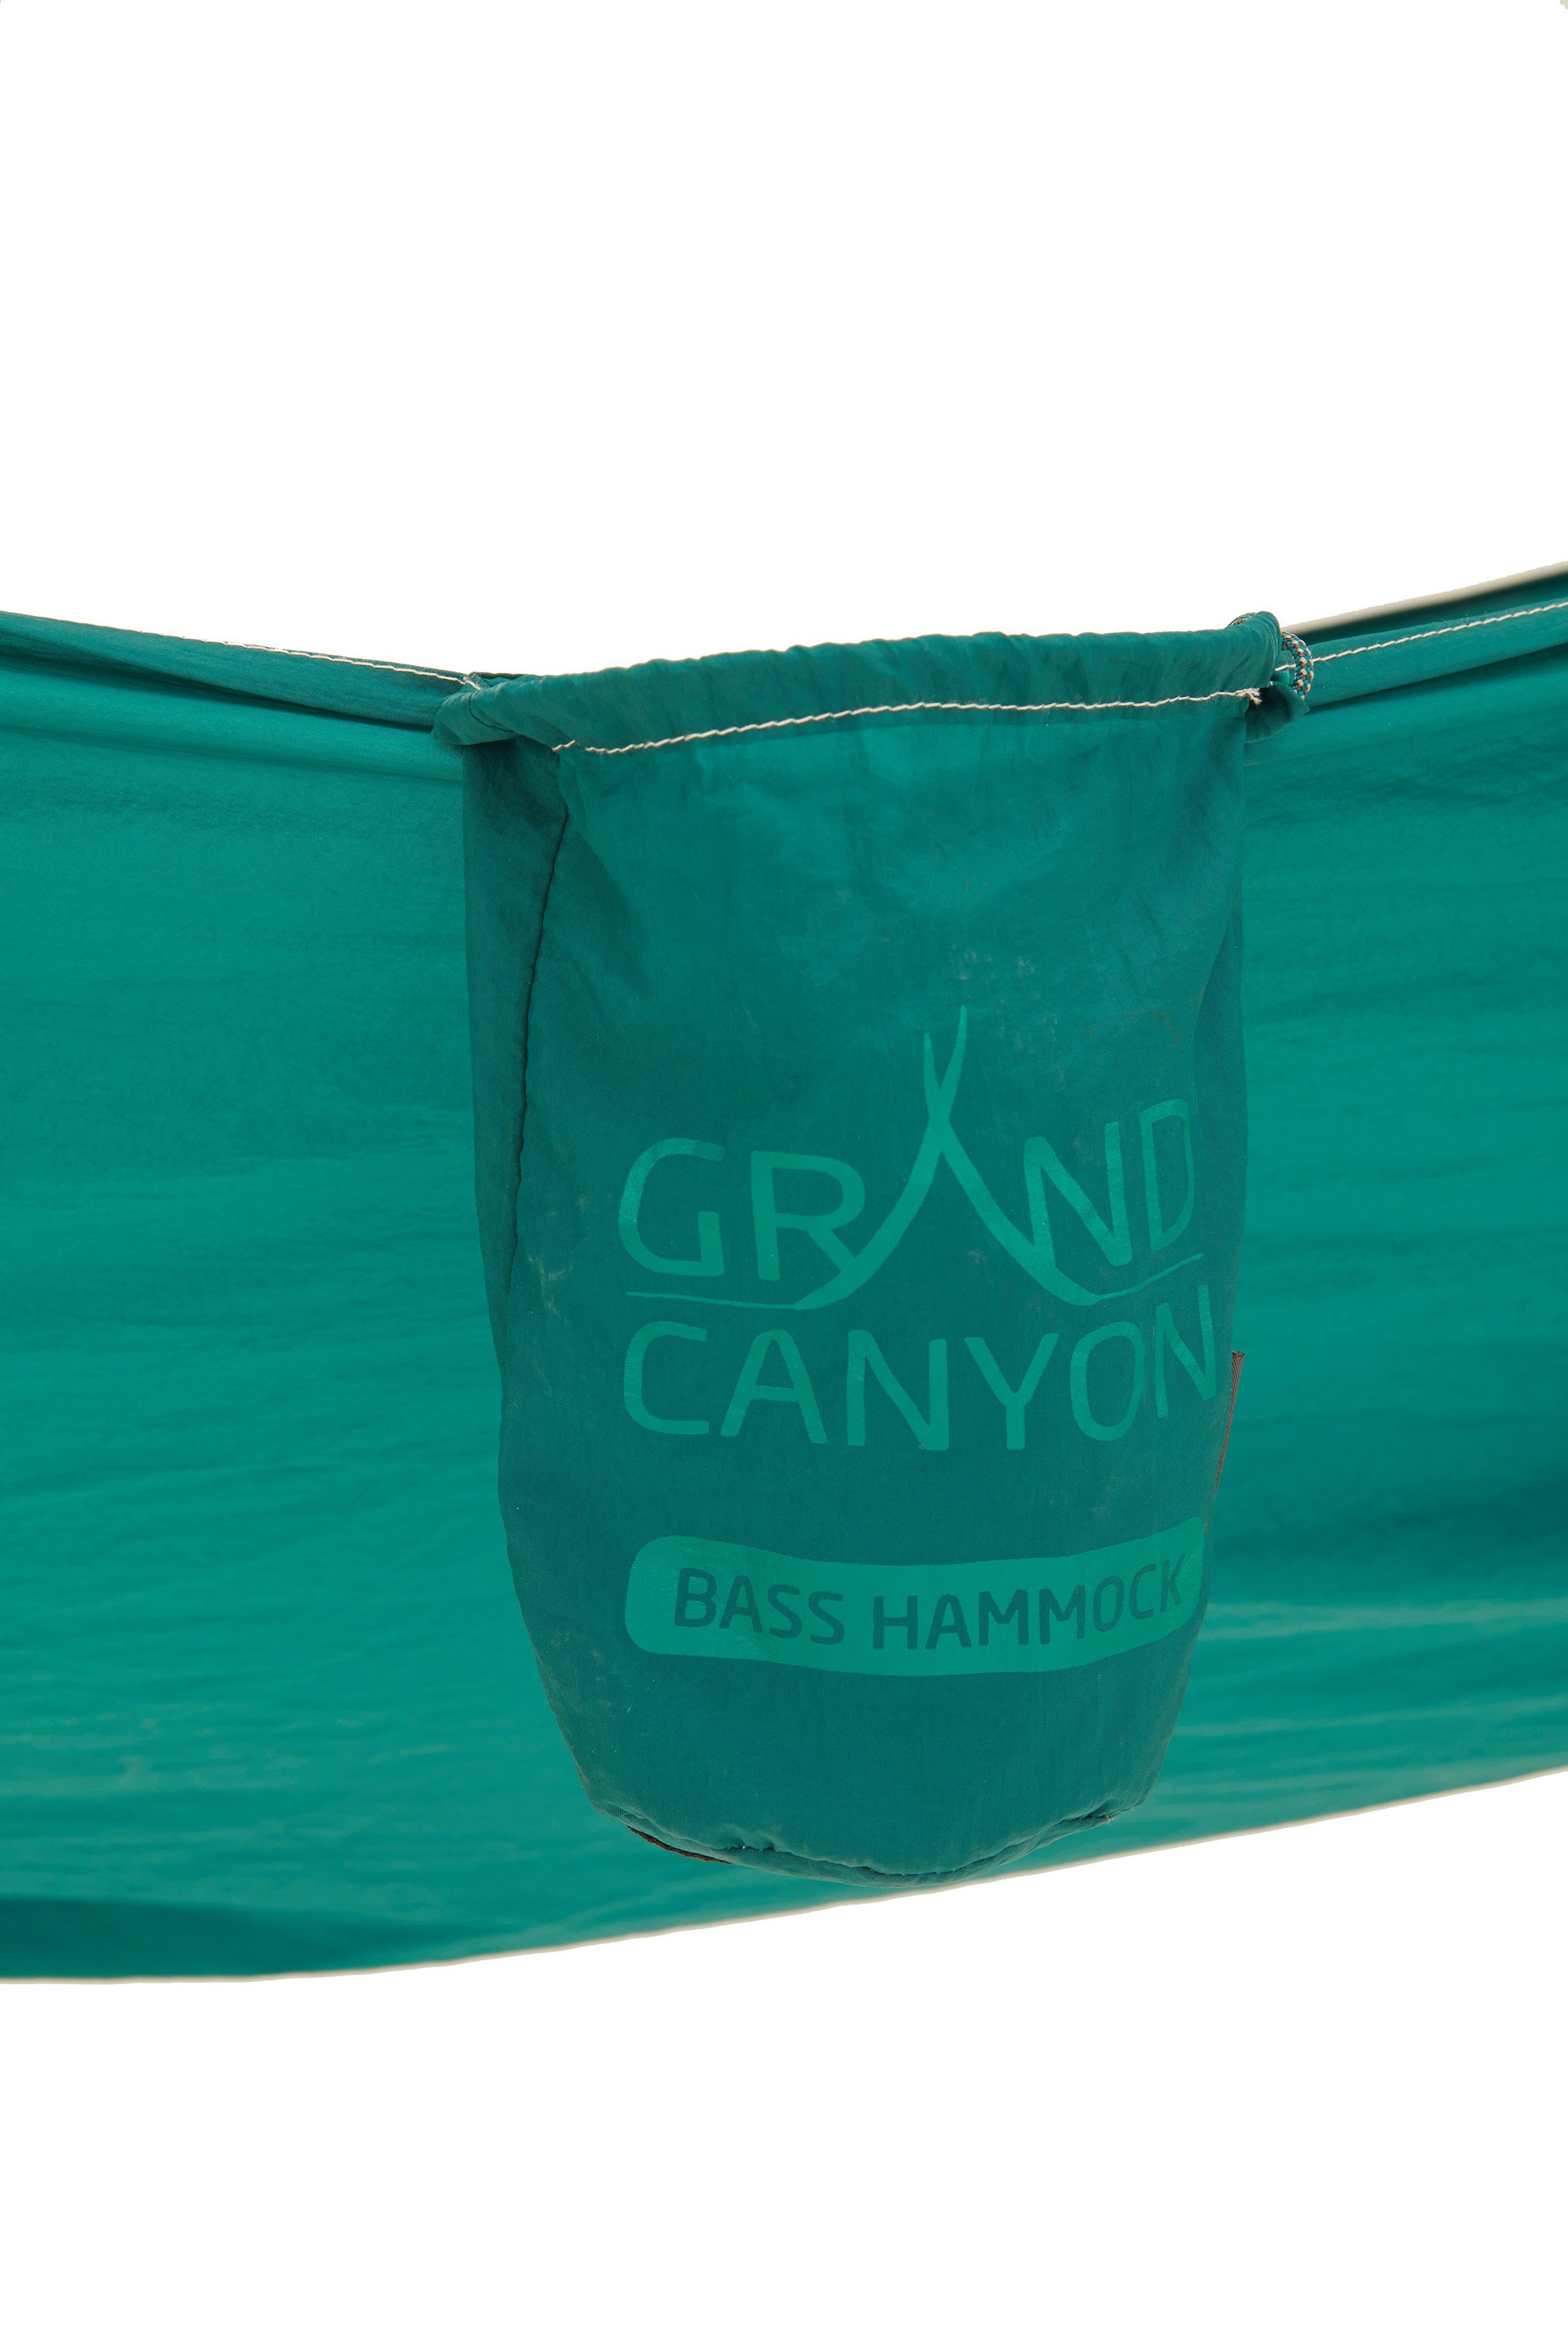 GRAND CANYON Hängematte Bass Hammock grün